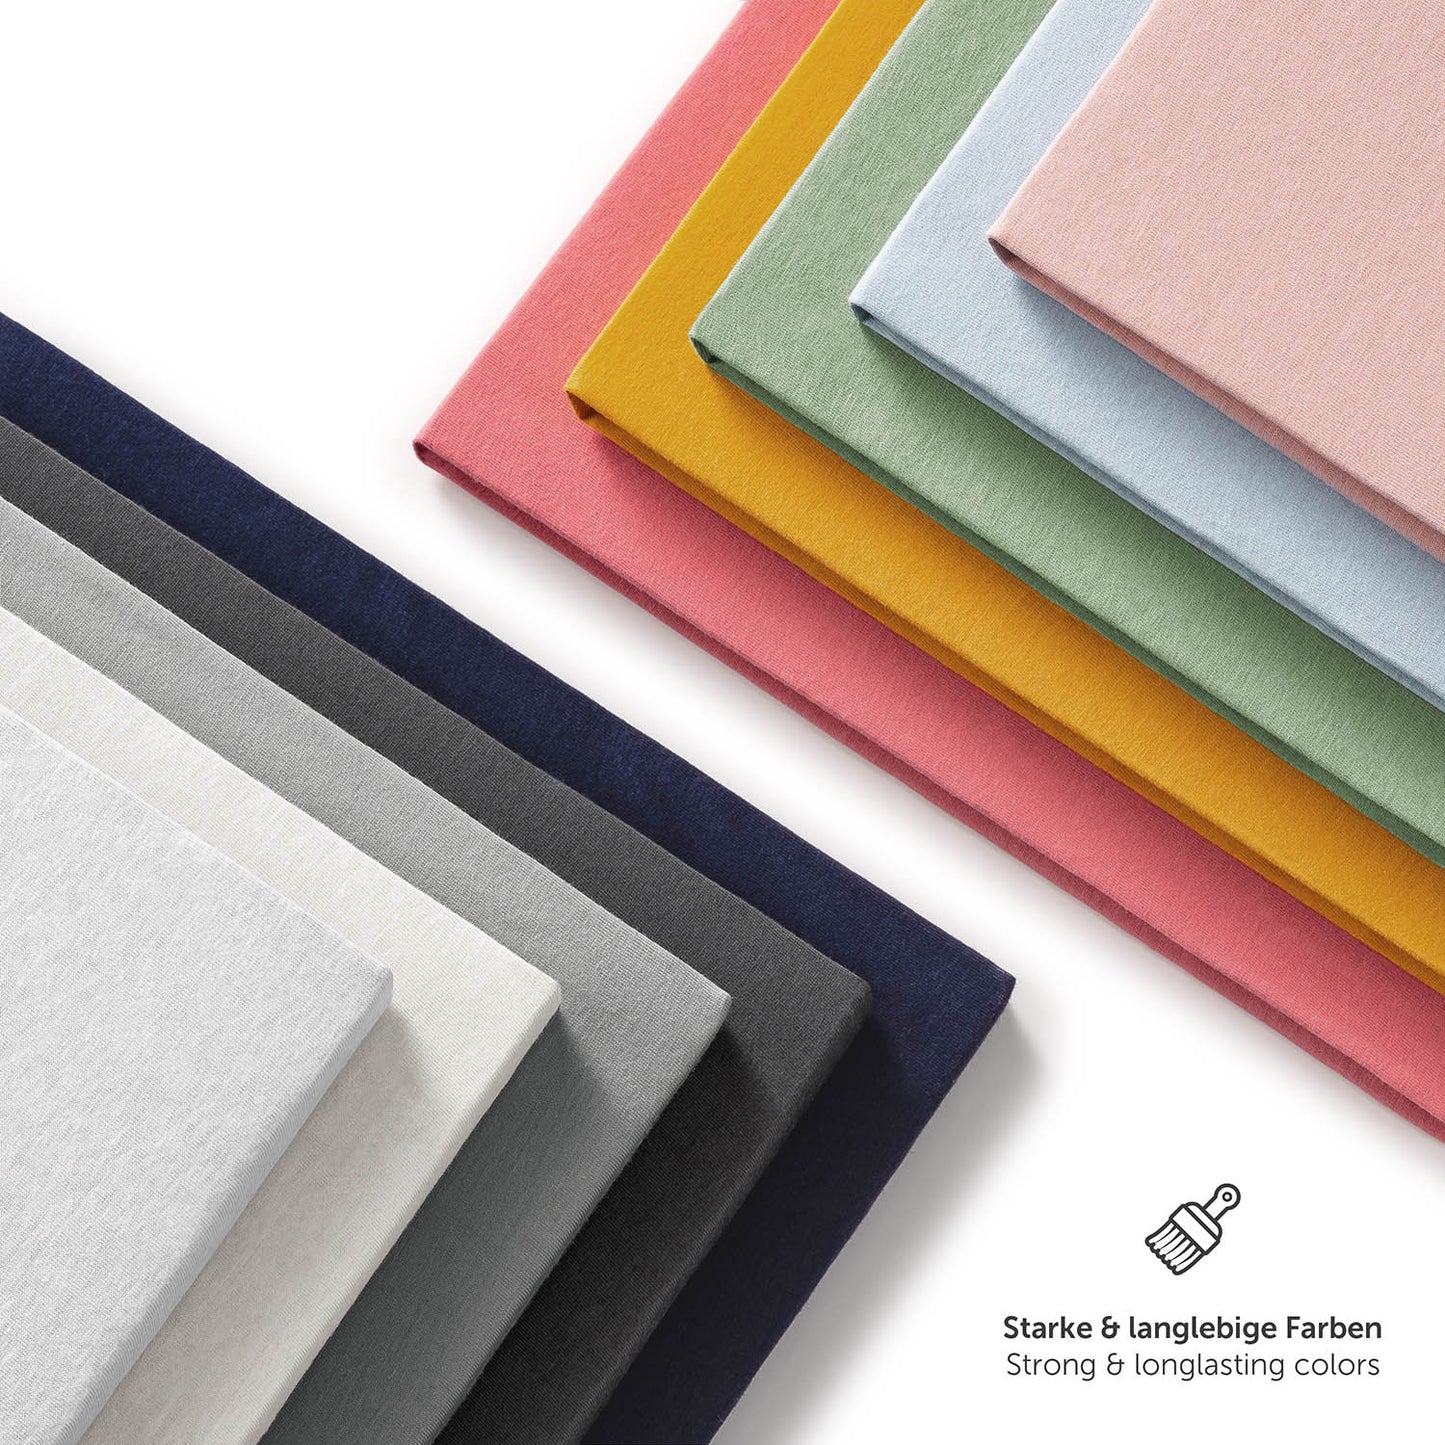 Palette von Spannbettlaken in sechs verschiedenen Farben darunter grau mit Hinweis auf starke und langlebige Farben